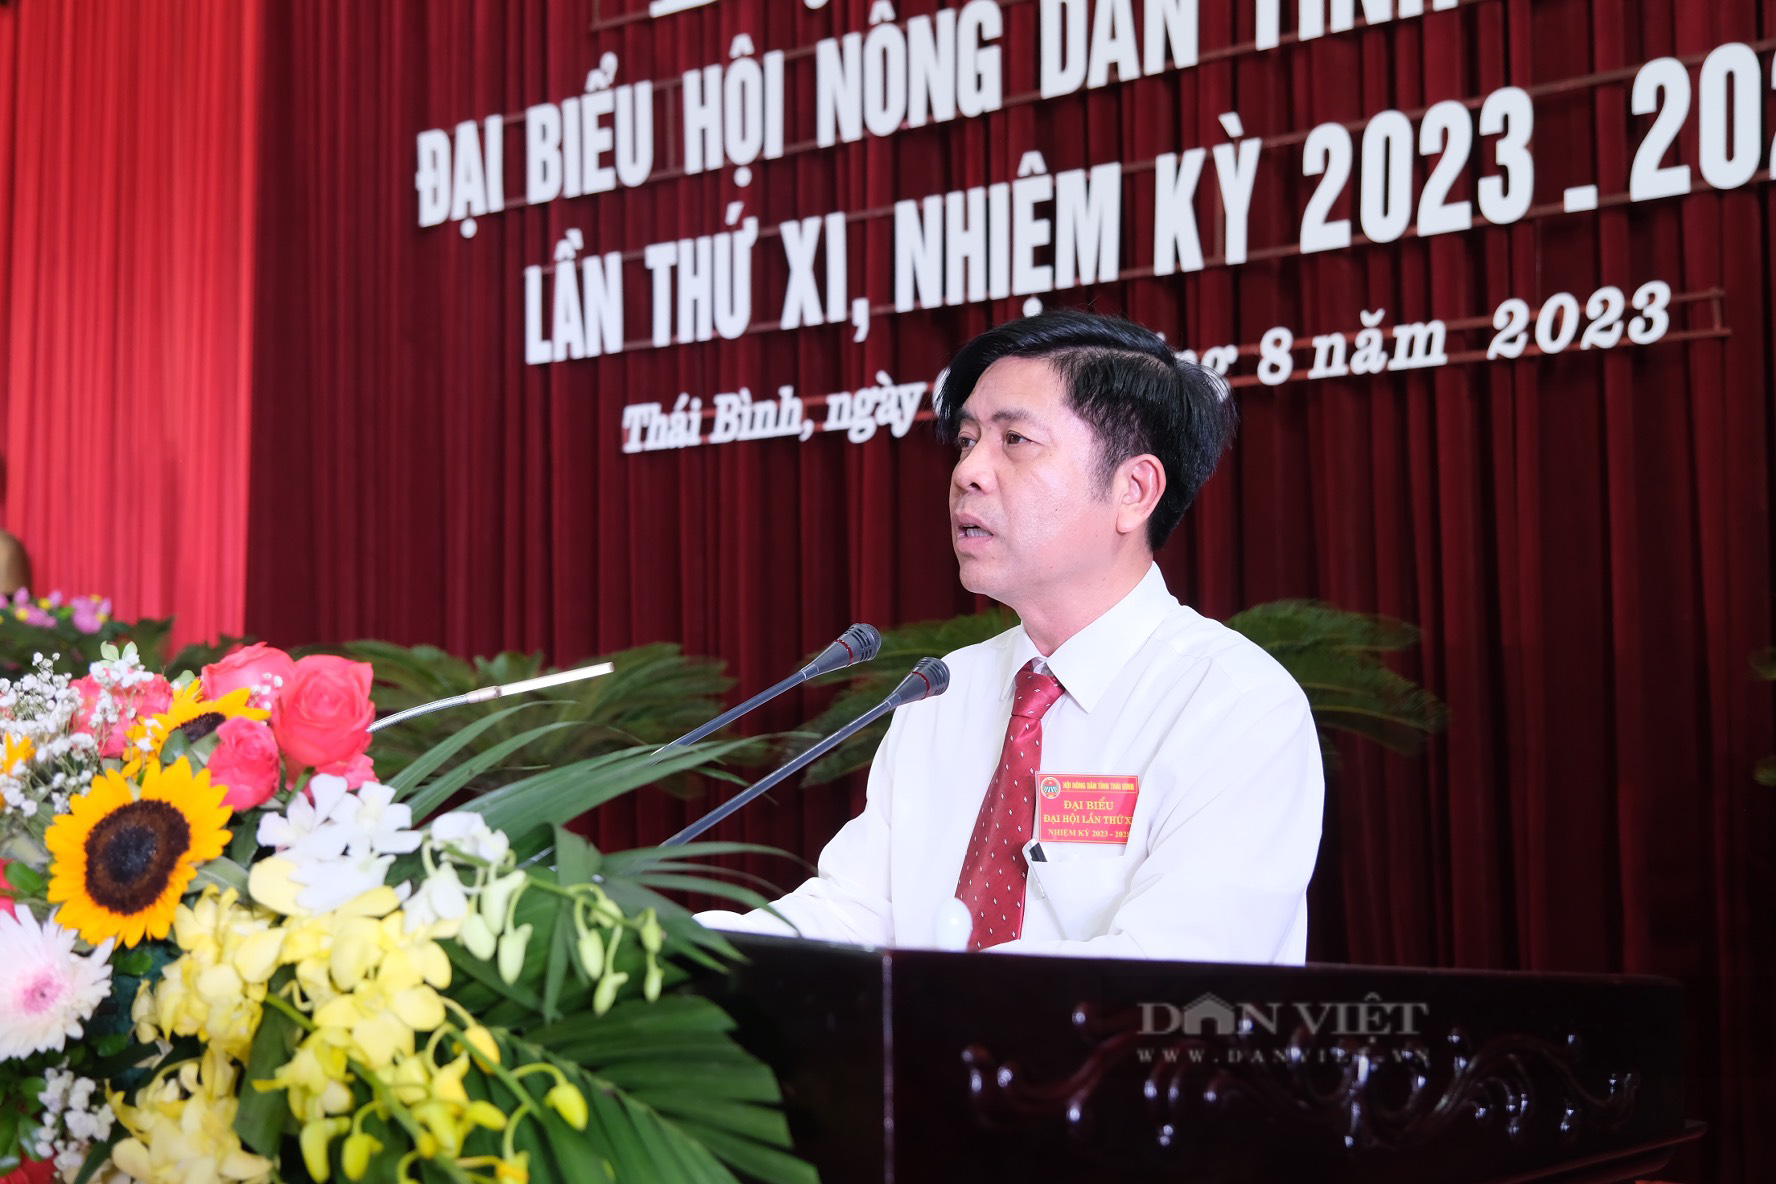 Đại hội đại biểu Hội Nông dân tỉnh Thái Bình lần thứ XI, nhiệm kỳ 2023-2028 - Ảnh 3.